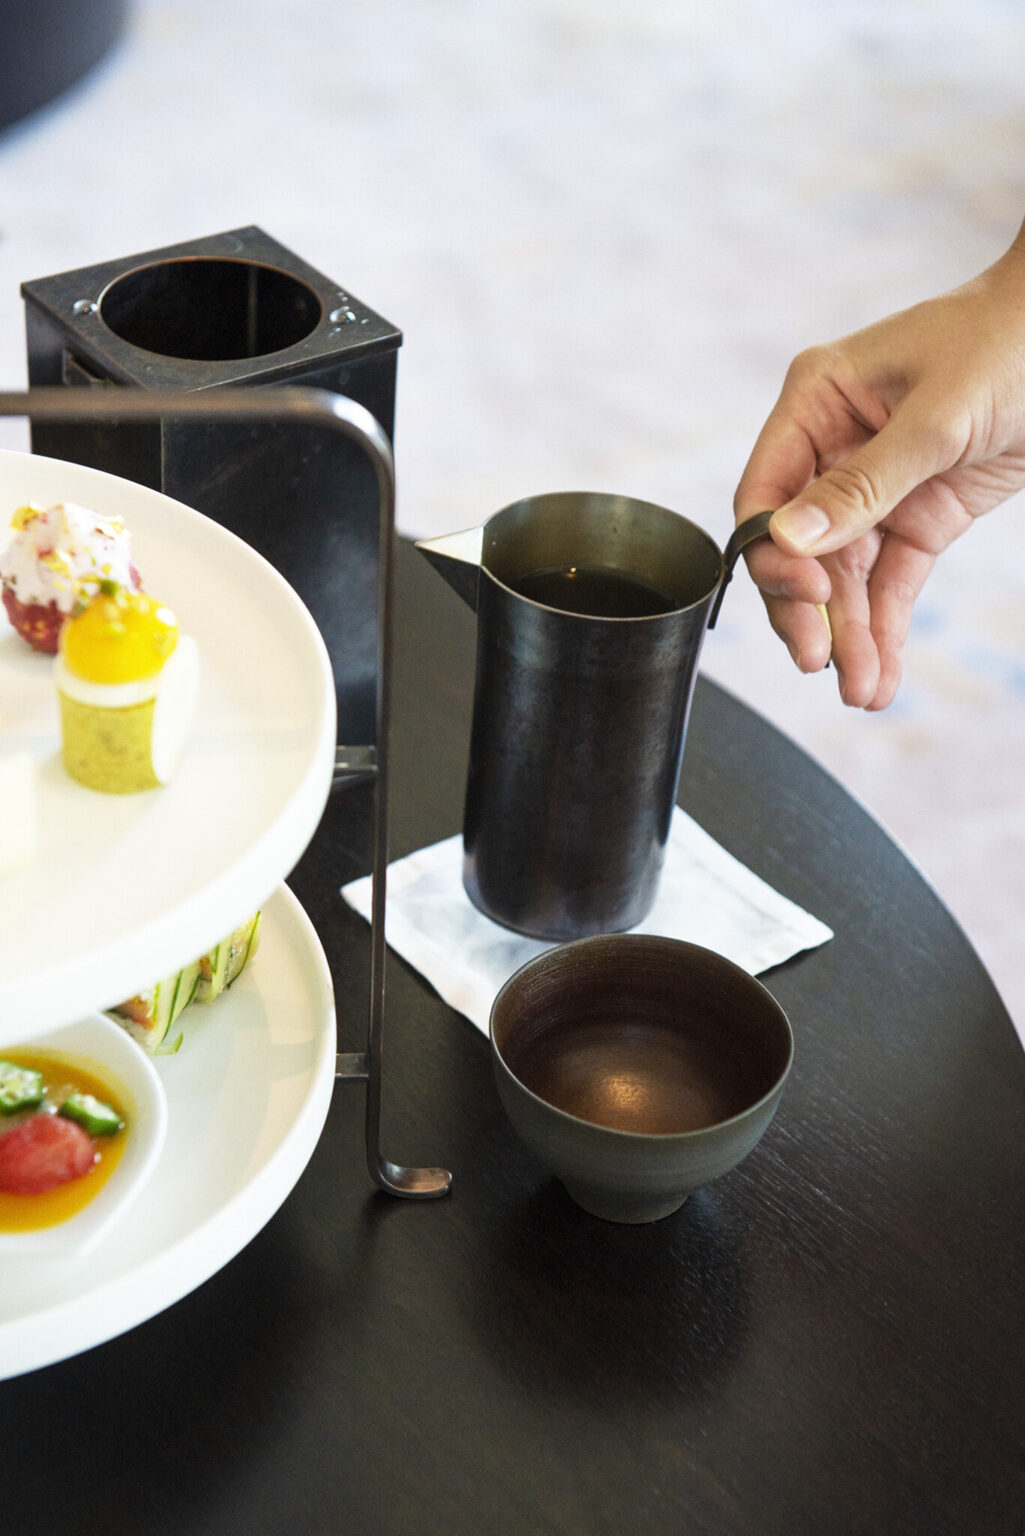 ほうじ茶、番茶、釜炒り茶など、日本全国から厳選した日本茶が充実。お茶のスペシャリストであるティーソムリエに相談しながら、ペアリングで味わうのがおすすめ。